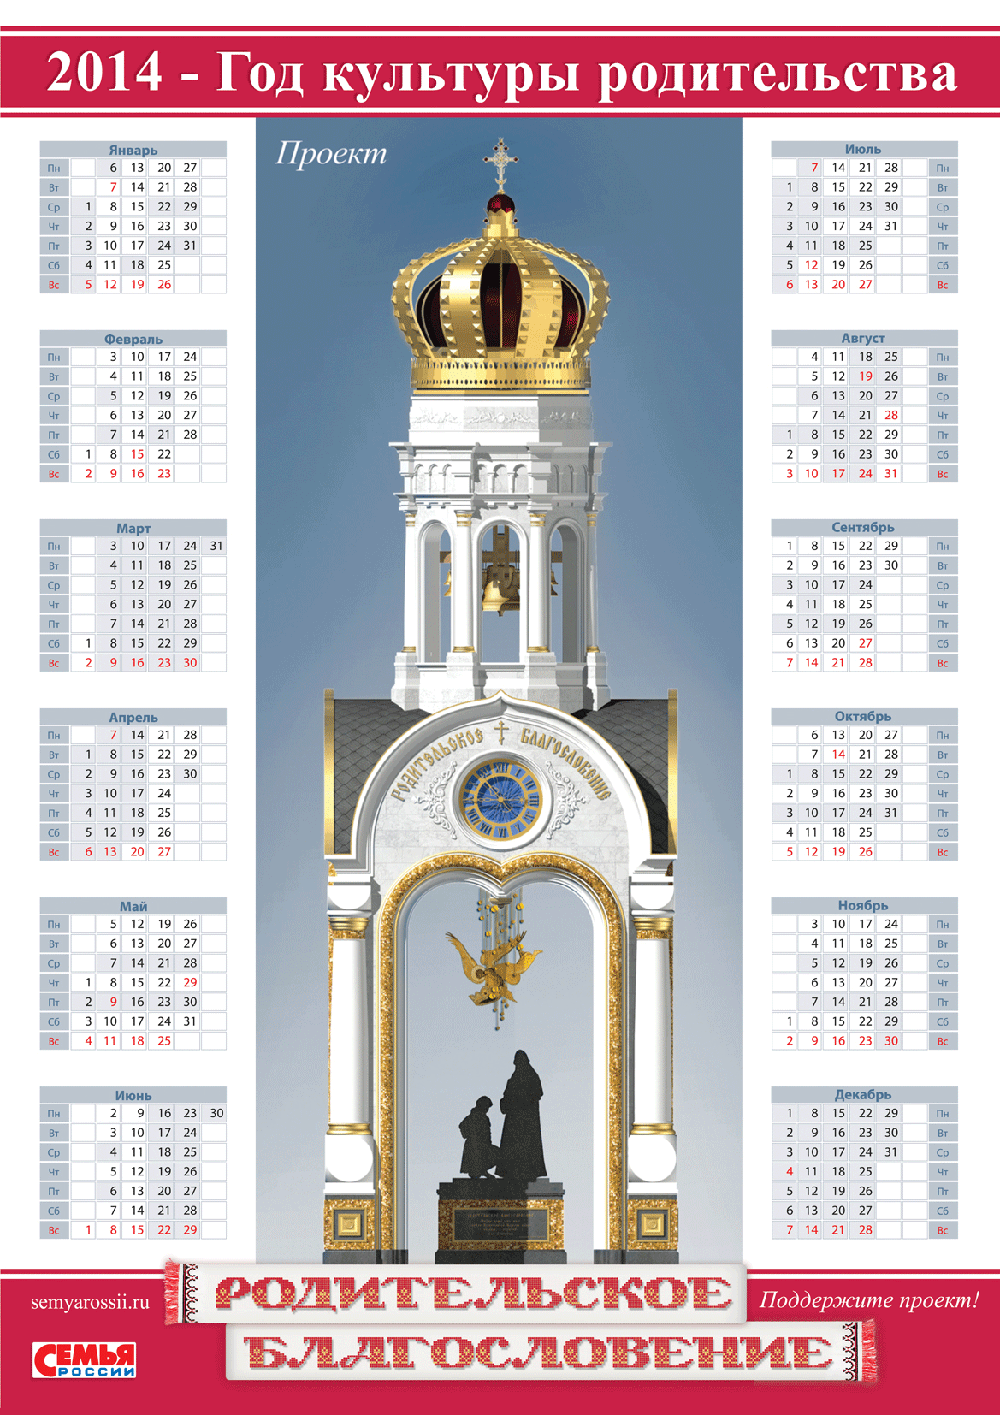 Kalendar2014